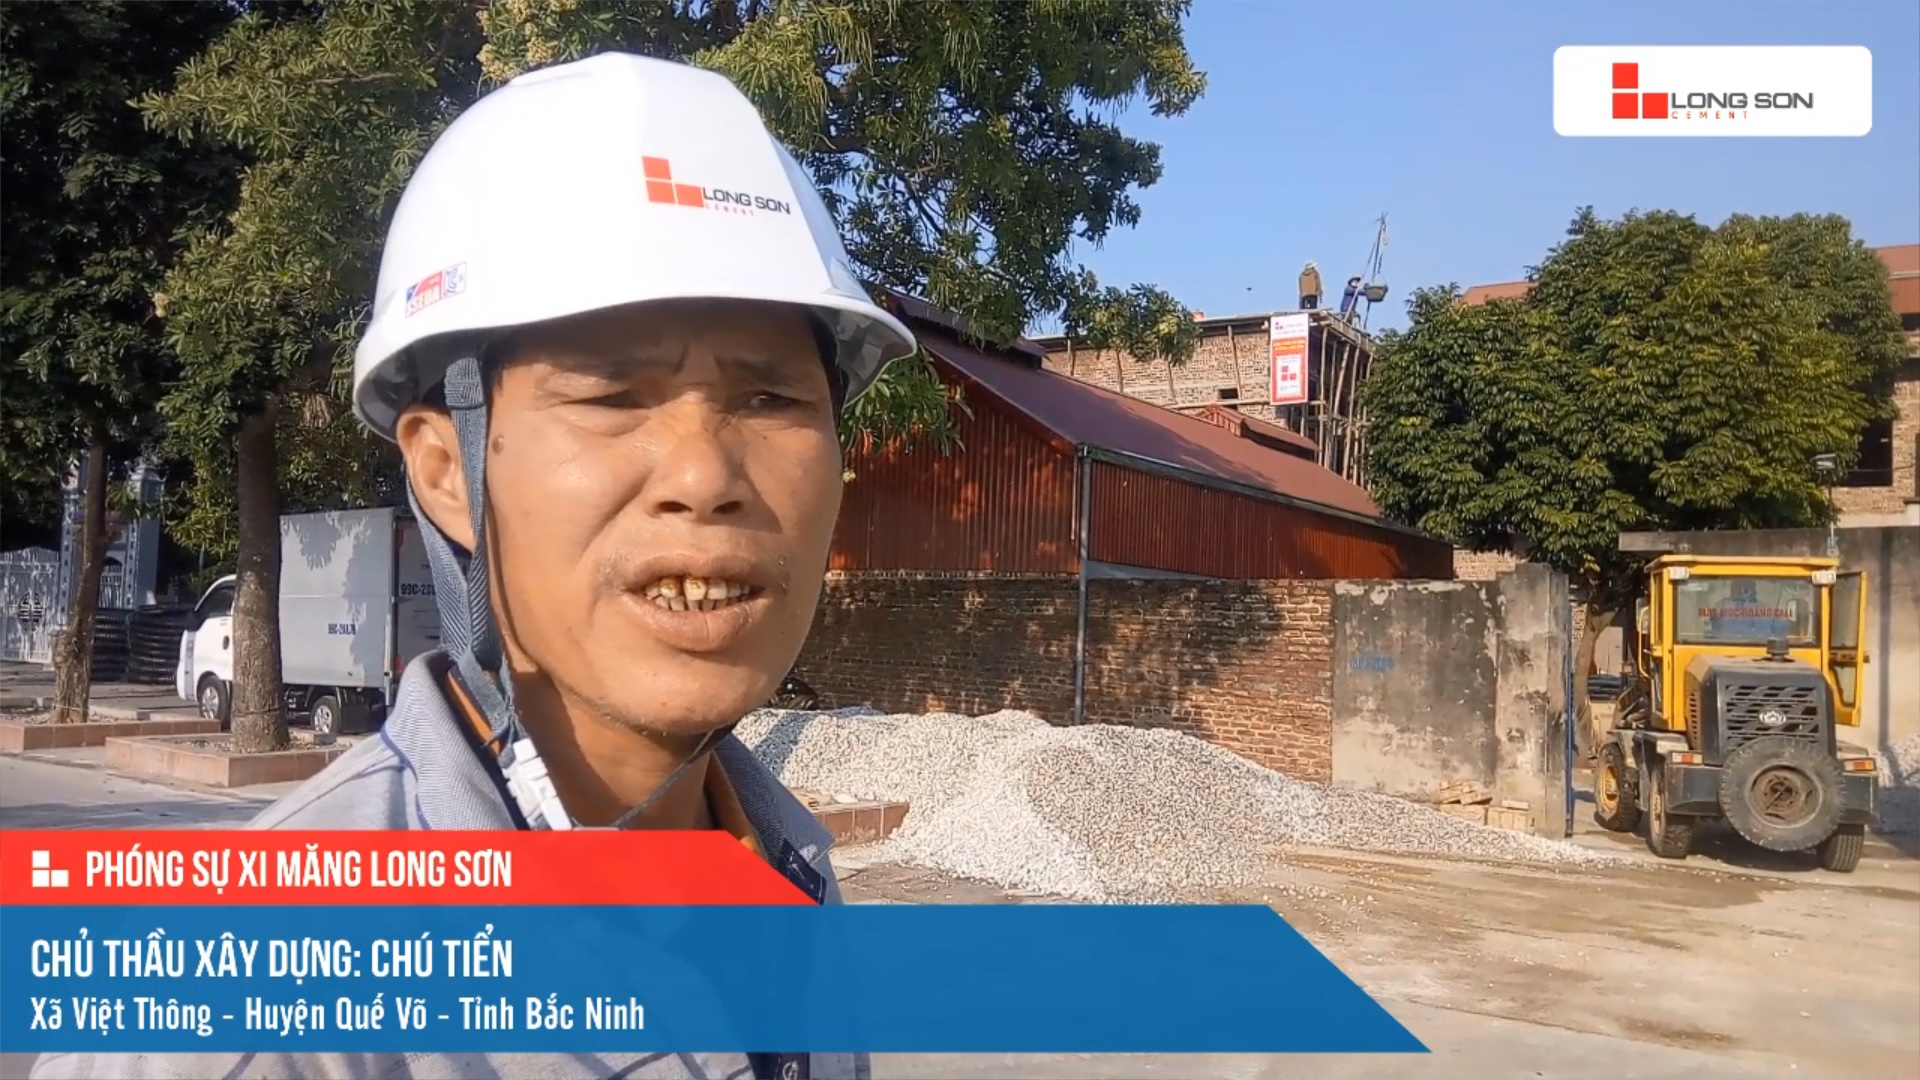 Phóng sự công trình sử dụng xi măng Long Sơn tại Bắc Ninh ngày 05/12/2021